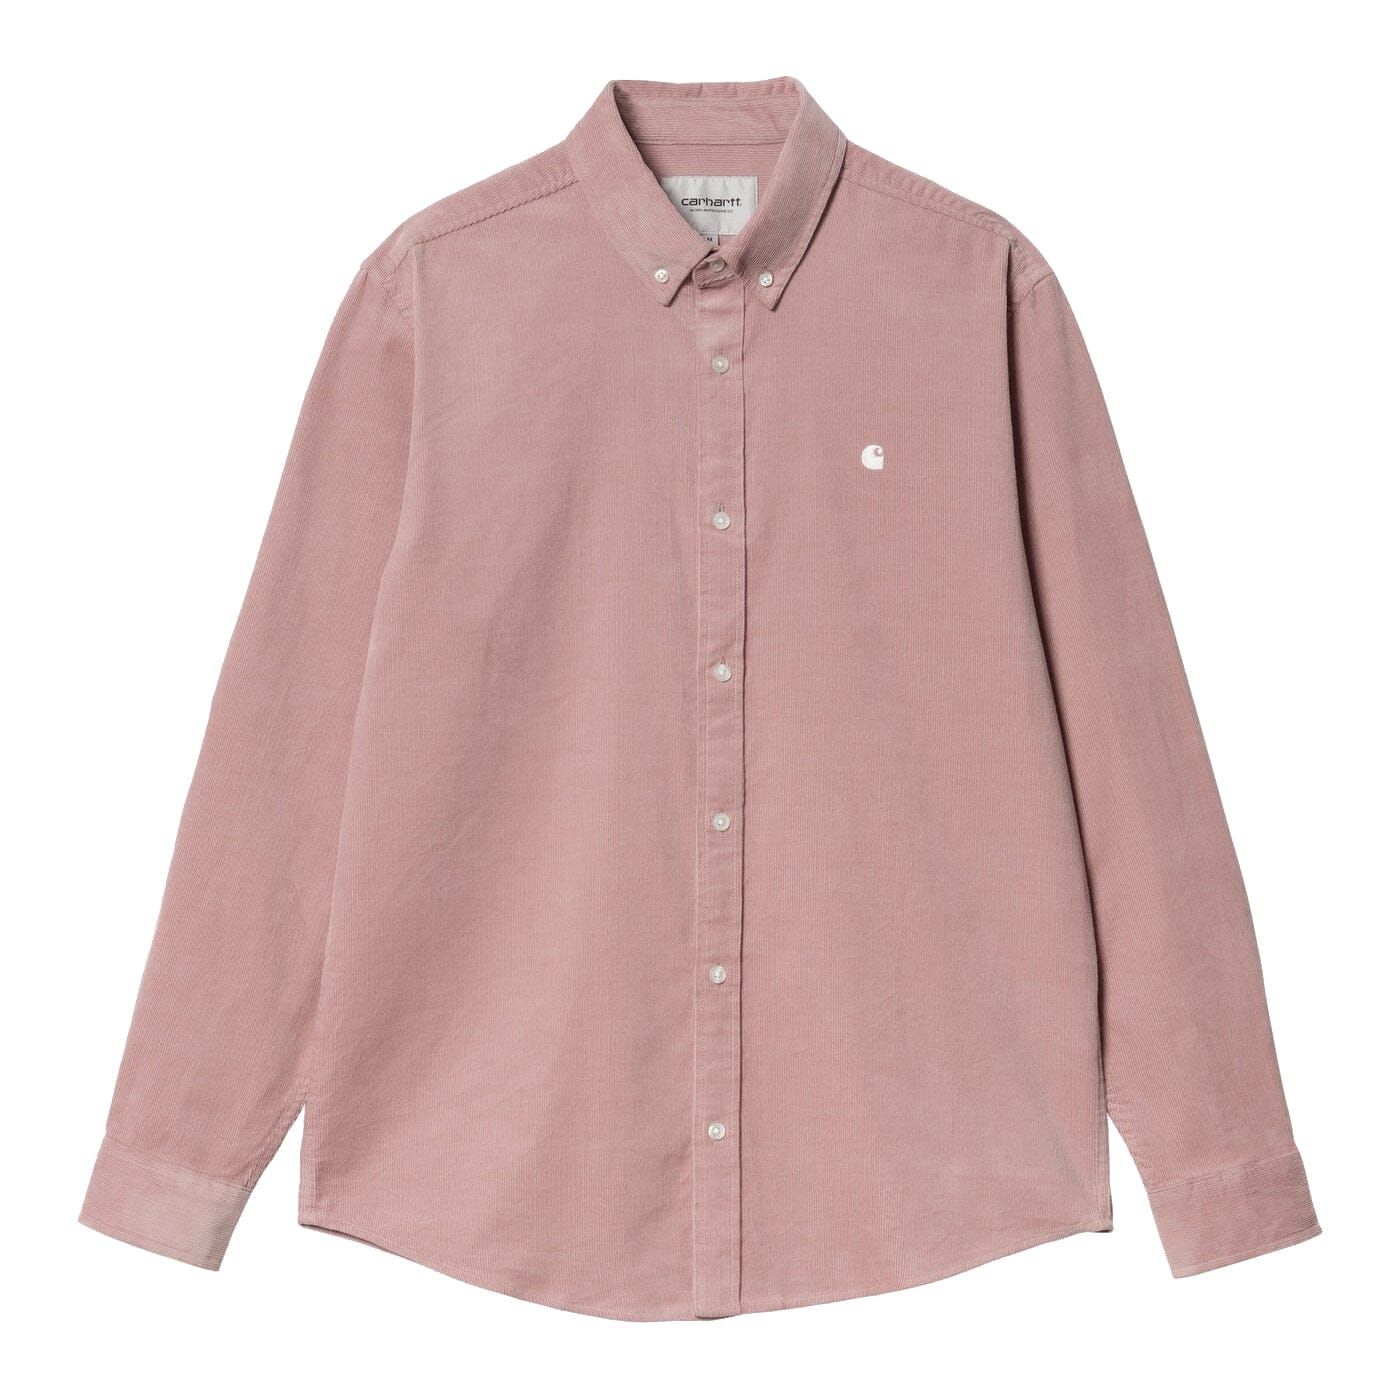 Carhartt WIP L/S Madison Fine Cord Shirt Glassy Pink/Wax shirts Carhartt WIP 